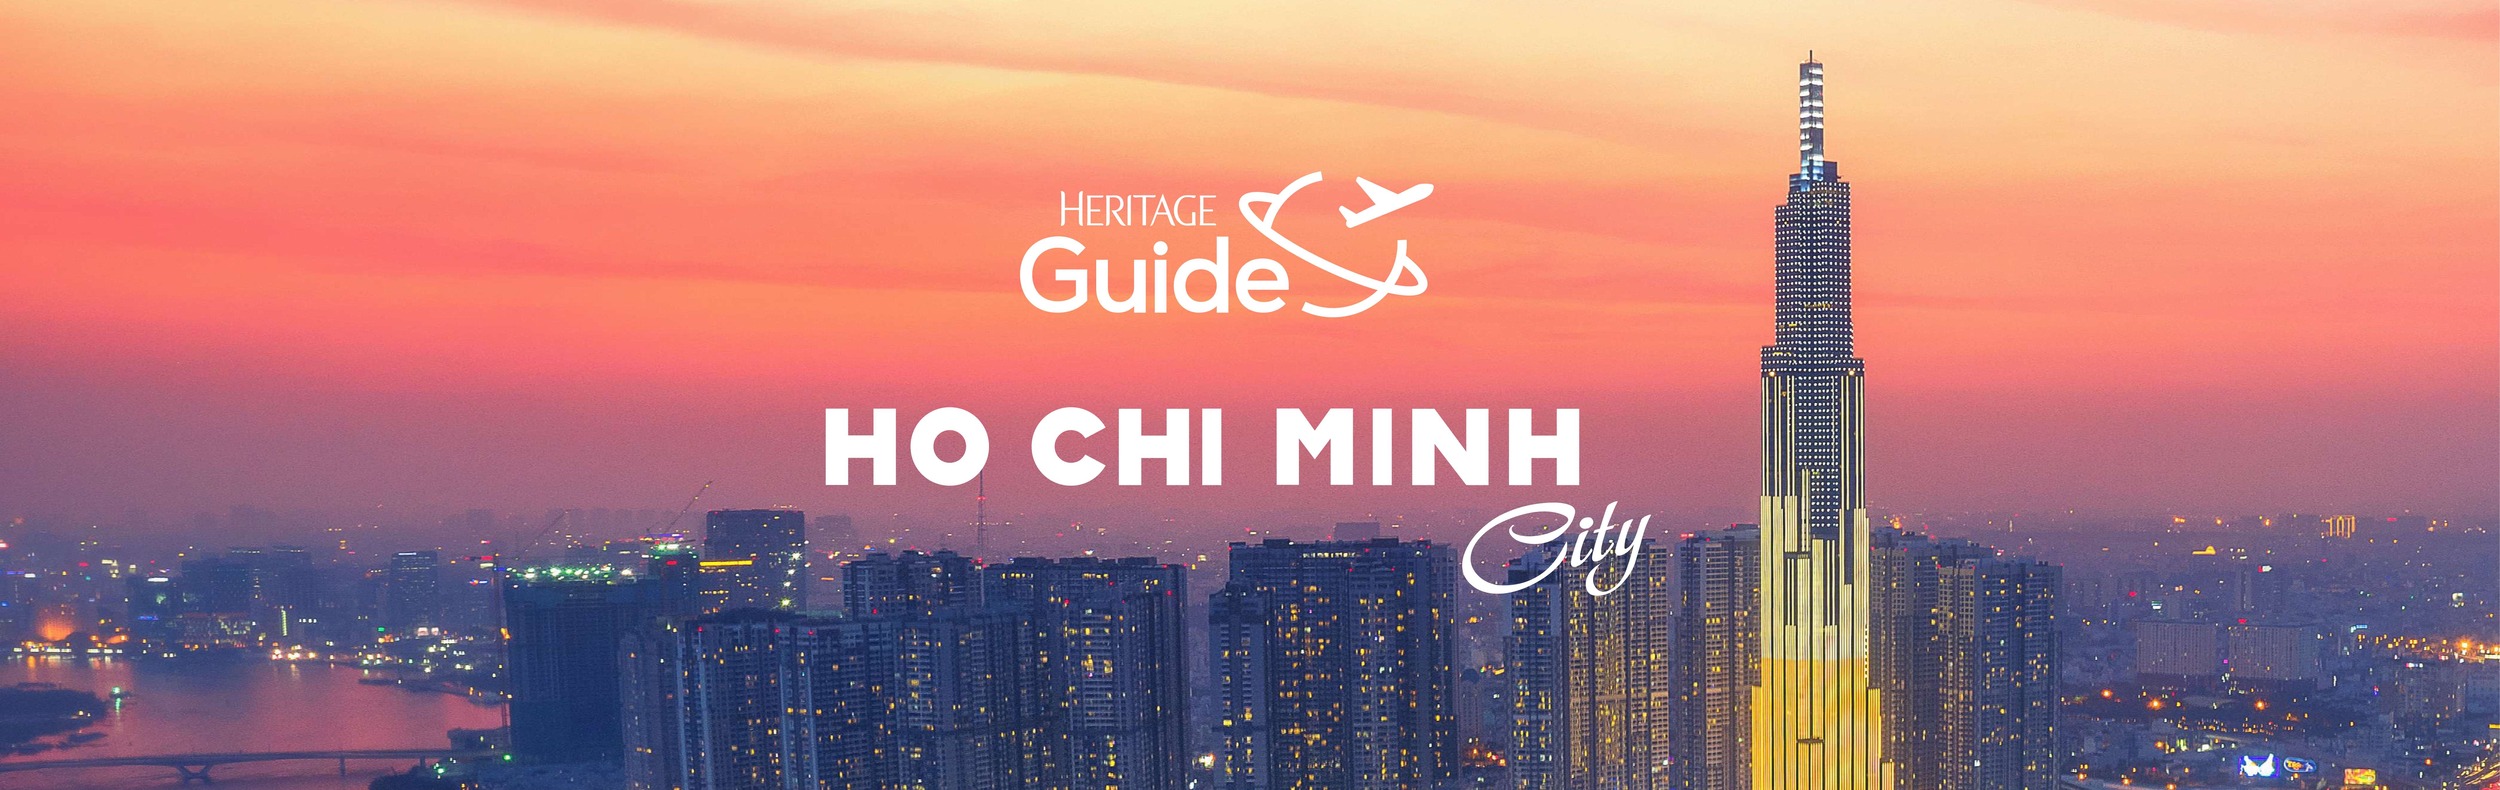 Khám phá thiên đường ẩm thực cùng “Heritage Guide Thành phố Hồ Chí Minh”